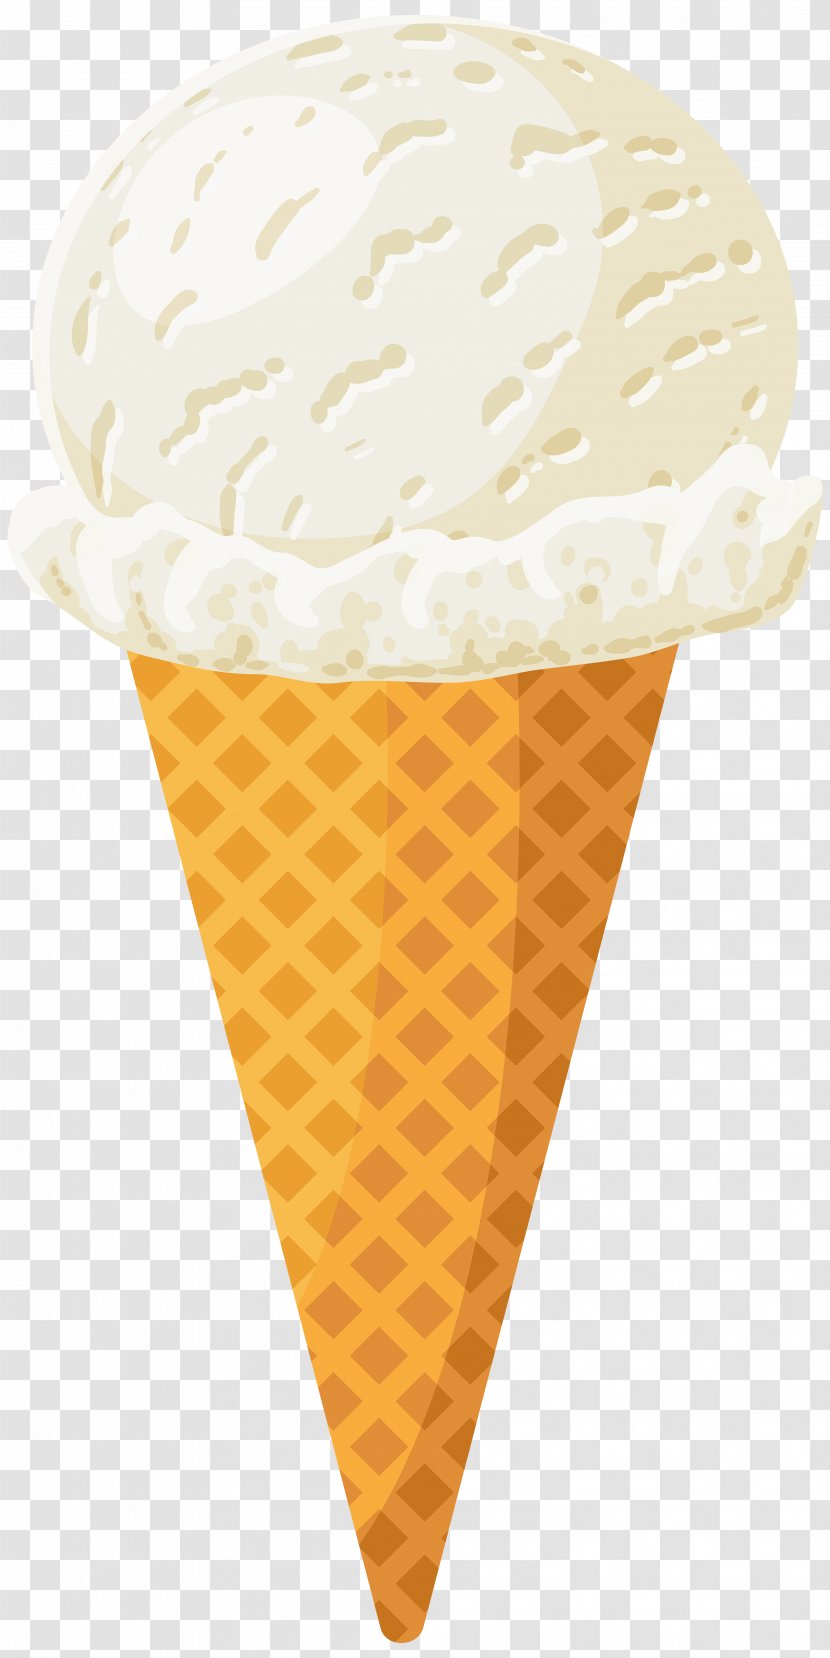 Ice Cream Cone Flavor - Dessert - Clip Art Image Transparent PNG